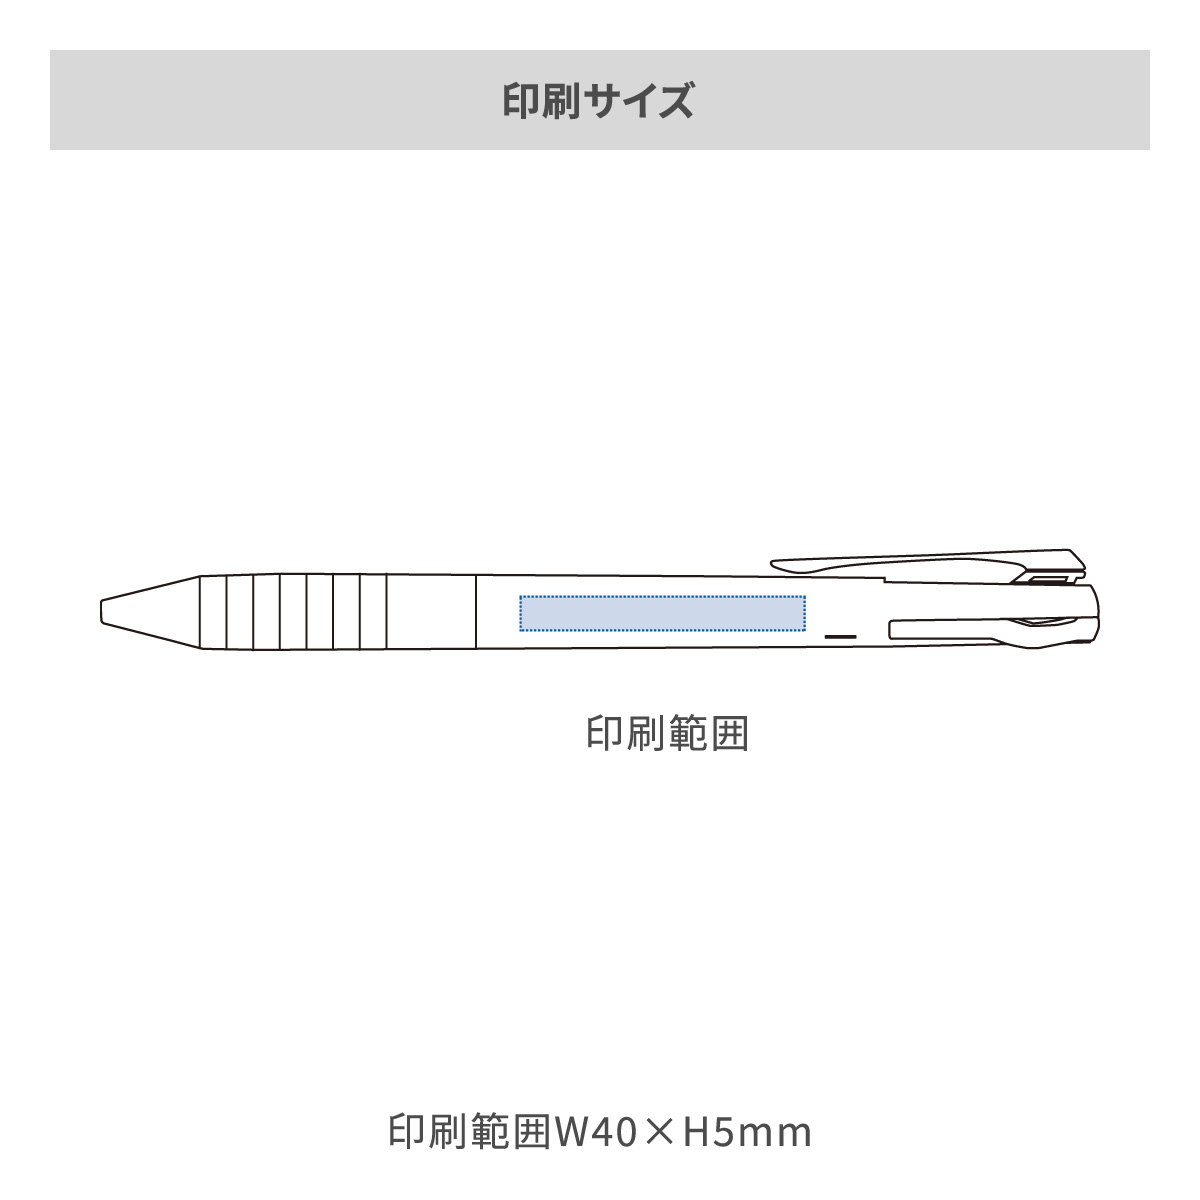 三菱鉛筆 ジェットストリーム スリムコンパクト 3色ボールペン 0.5mm【名入れボールペン / パッド印刷】 画像2